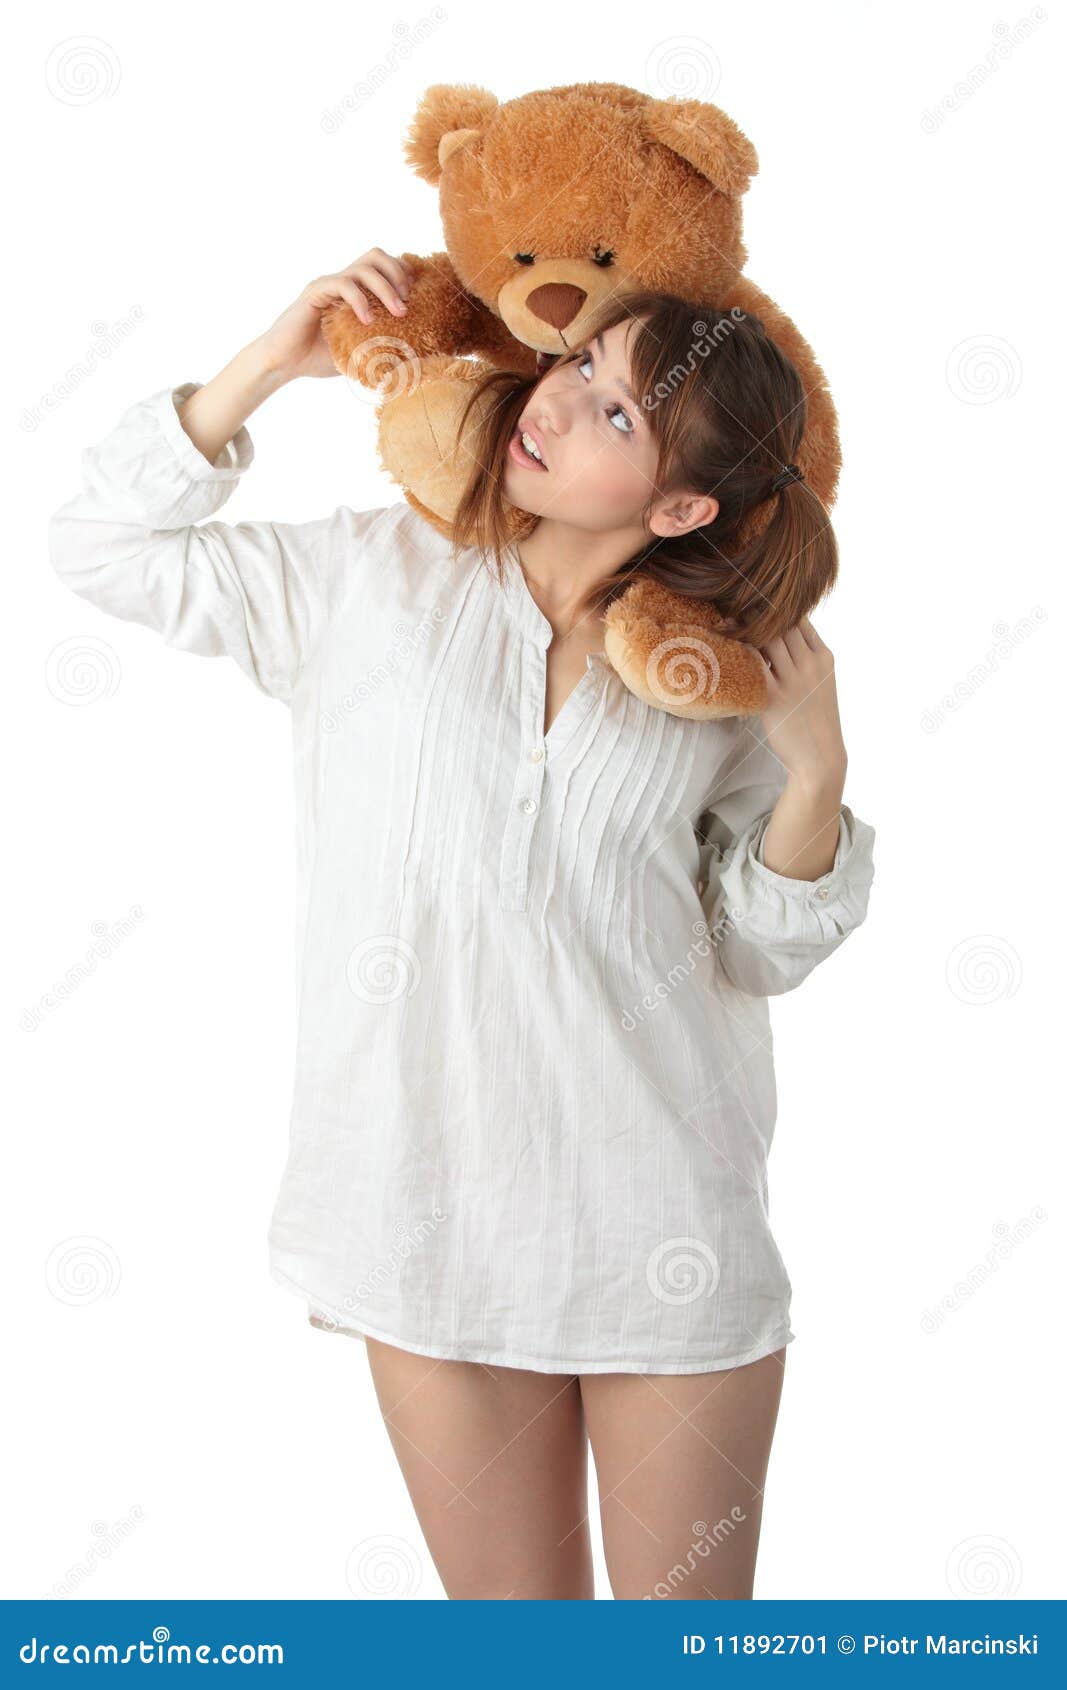 Teen with teddy bear